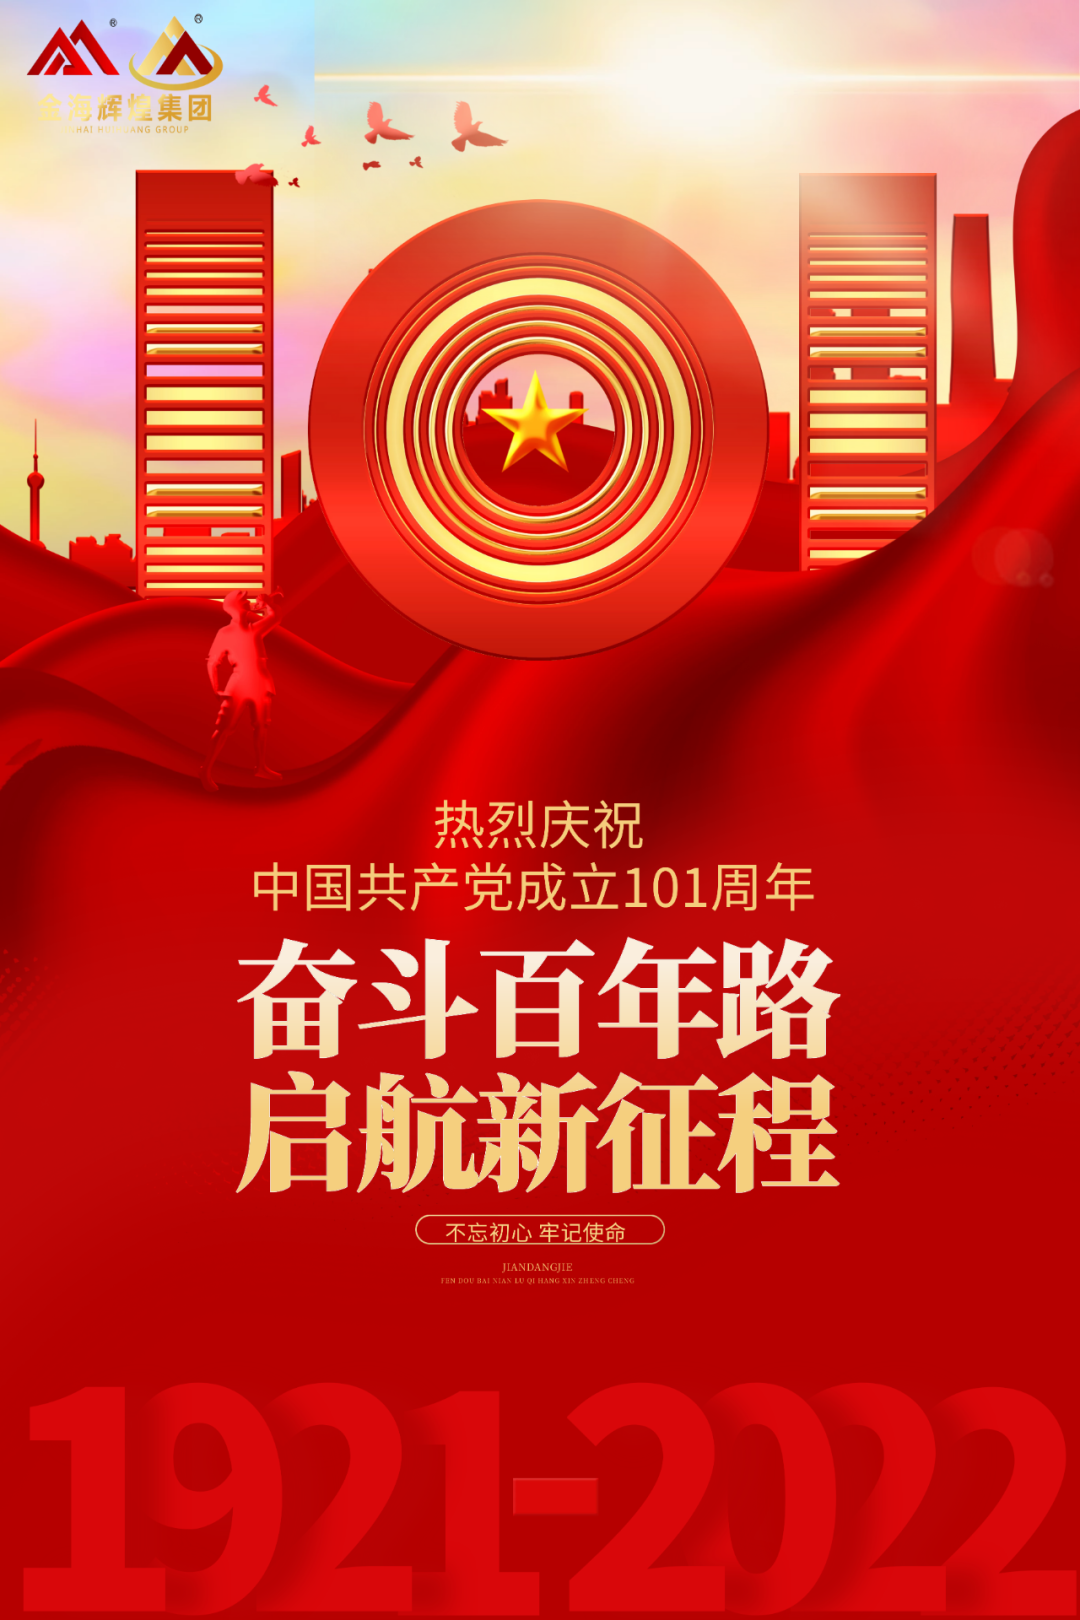 AG旗舰厅 | 热烈祝贺中国共产党建立101周年！